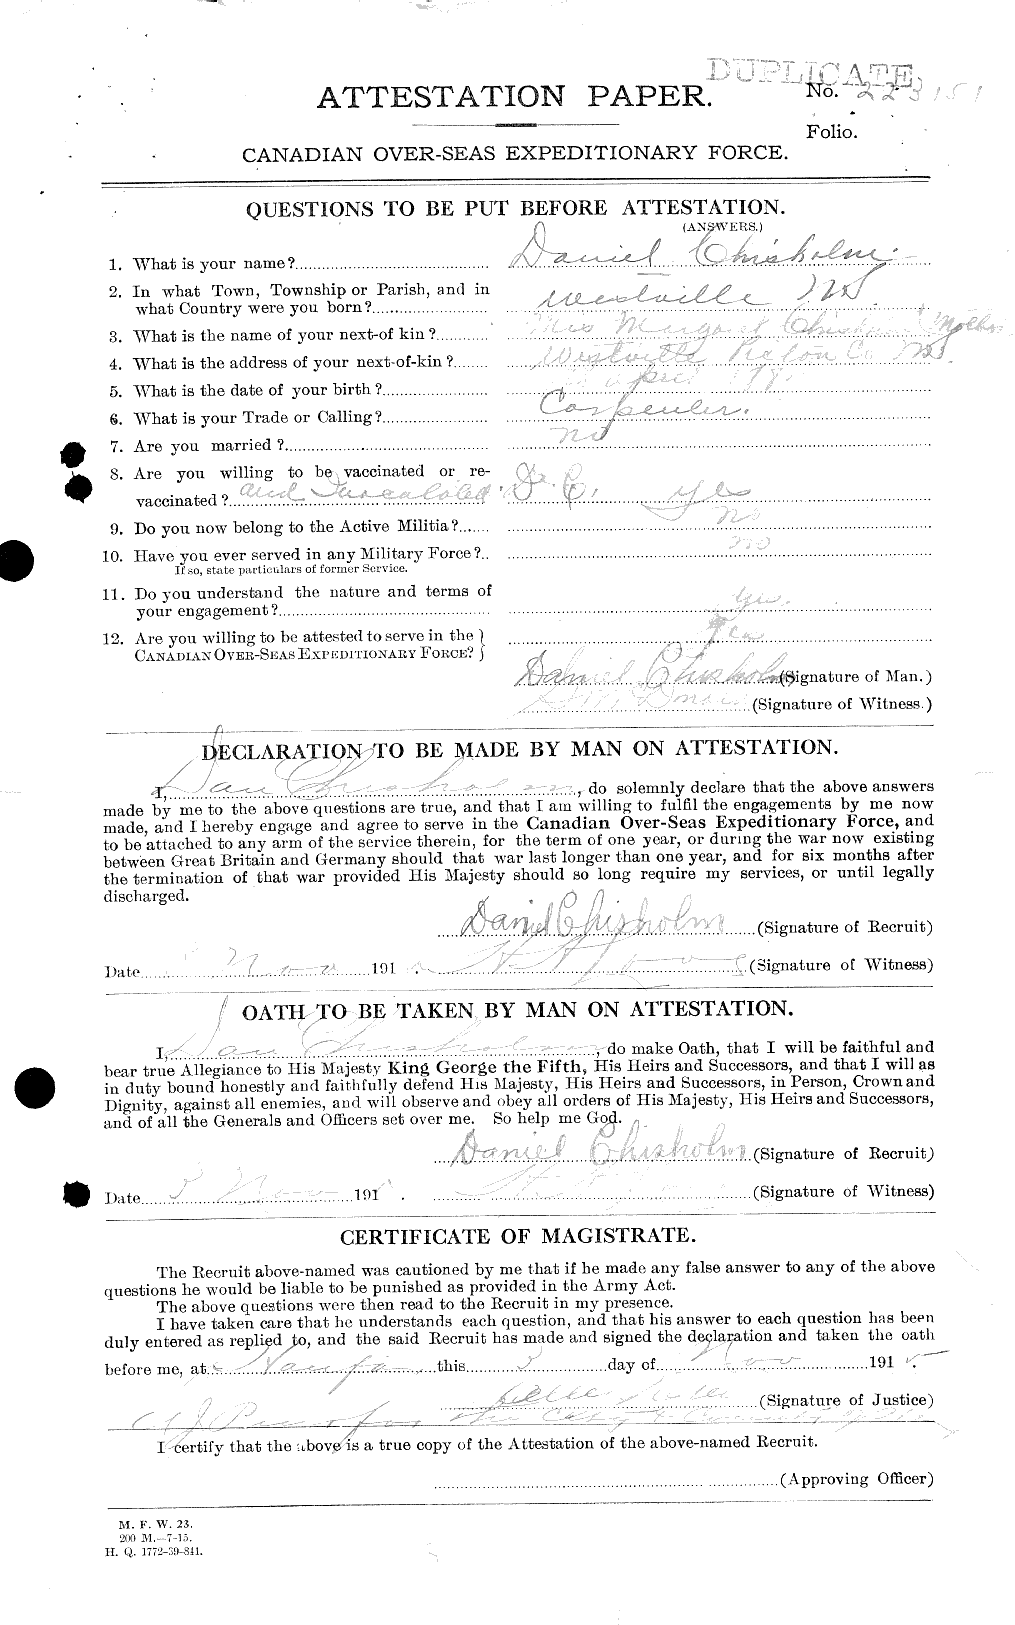 Dossiers du Personnel de la Première Guerre mondiale - CEC 018246a